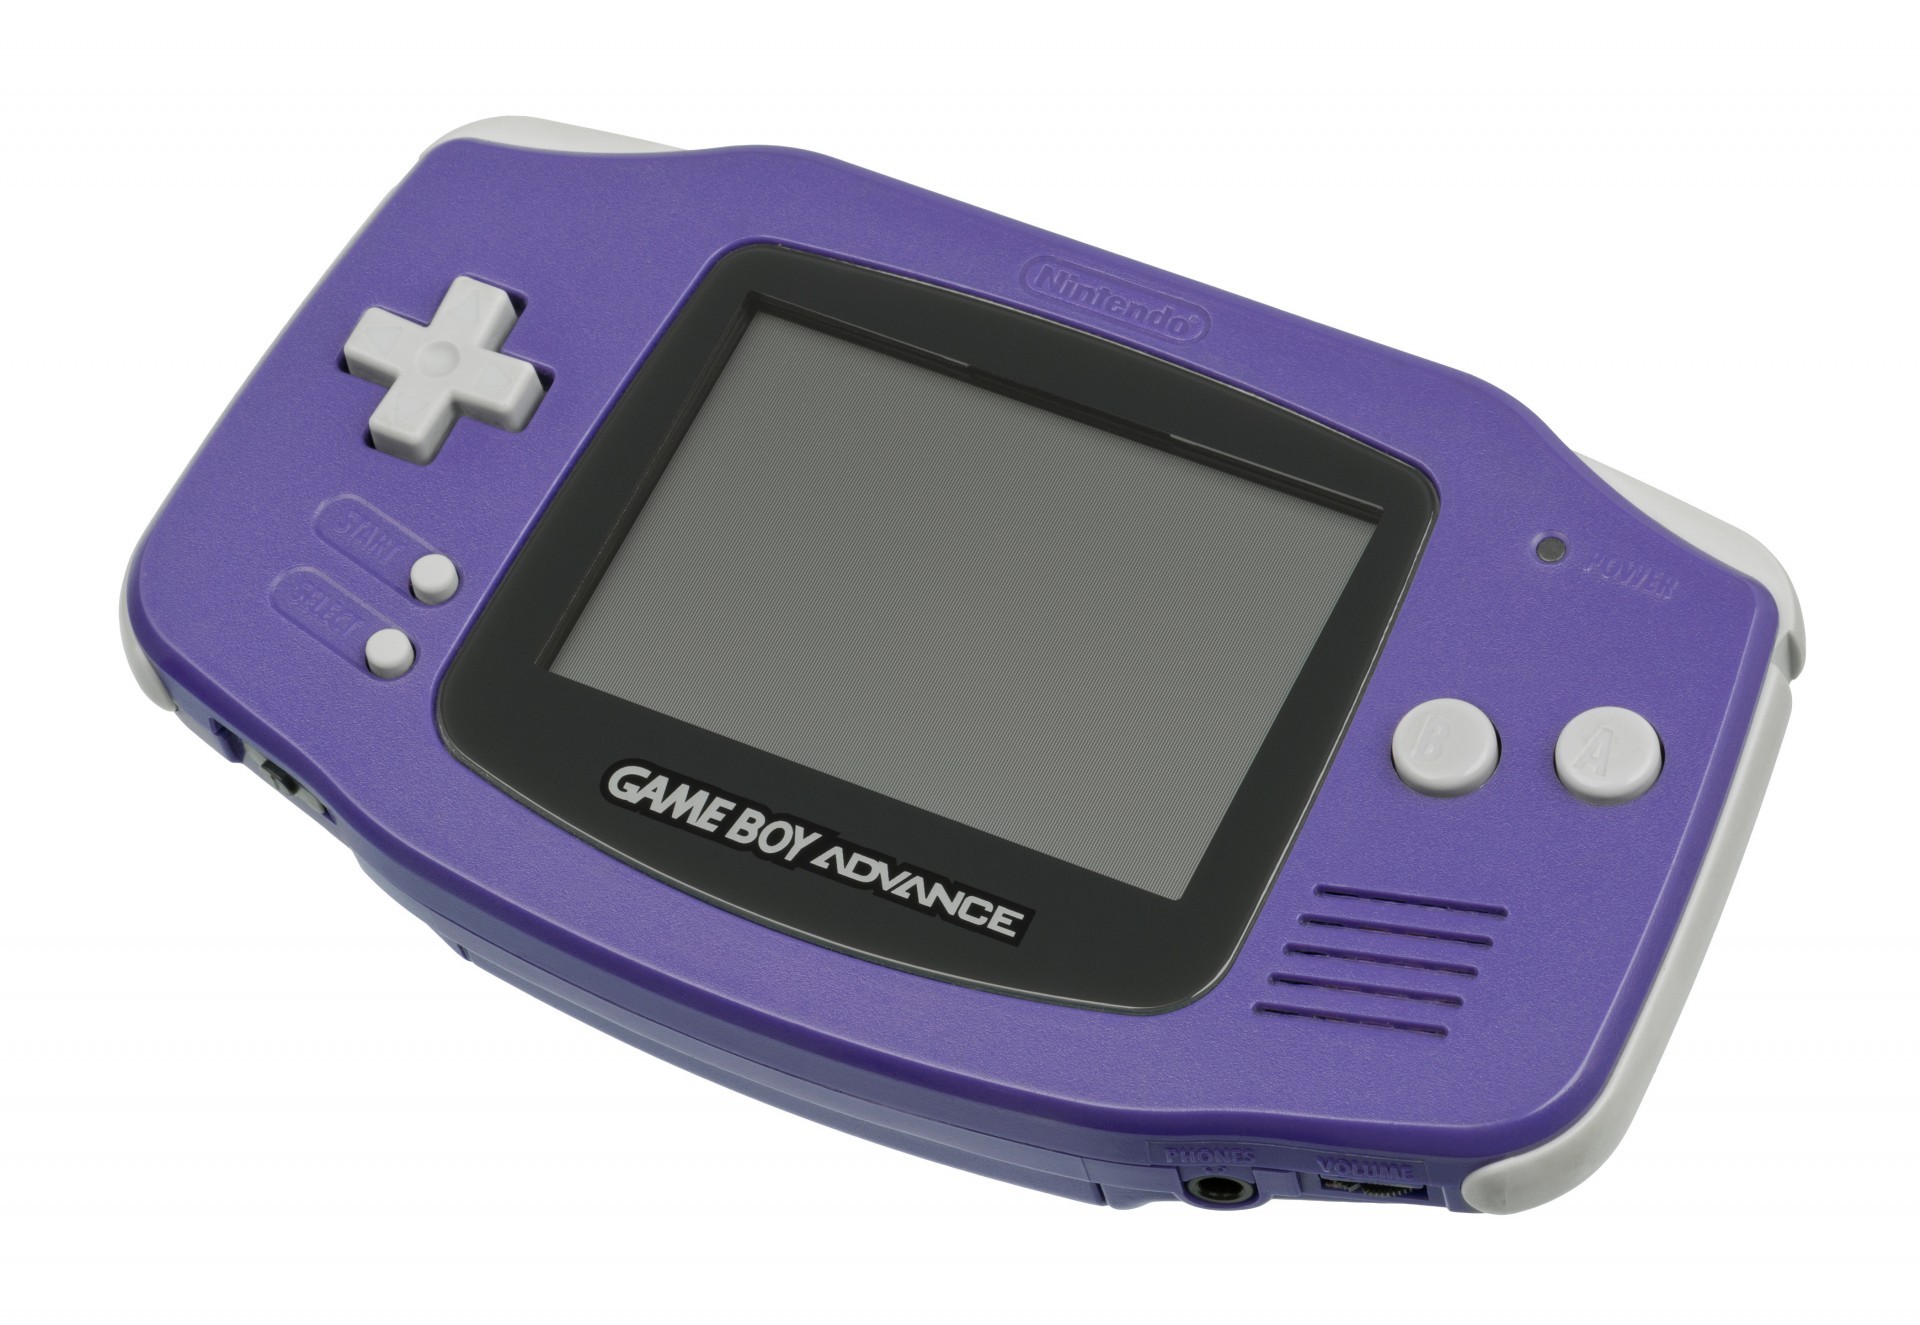 任天堂 32 位元经典掌机“Game Boy Advance”欢度 20 岁生日